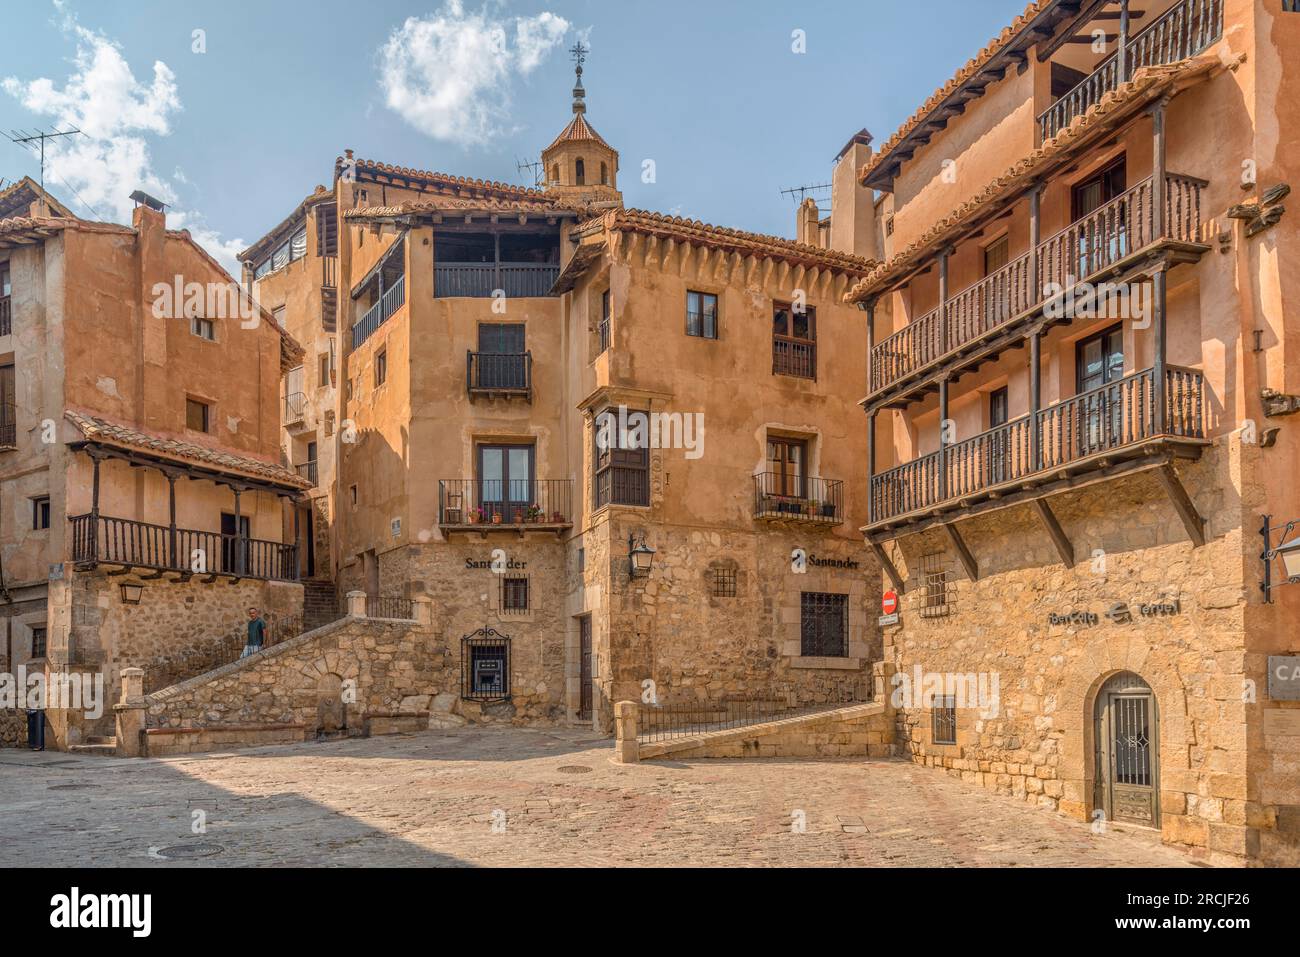 Der Hauptplatz im historischen Zentrum von Albarracín, der zu einer historisch-künstlerischen Stätte und einer der schönsten Städte Spaniens, Teruel, Europa, erklärt wurde Stockfoto